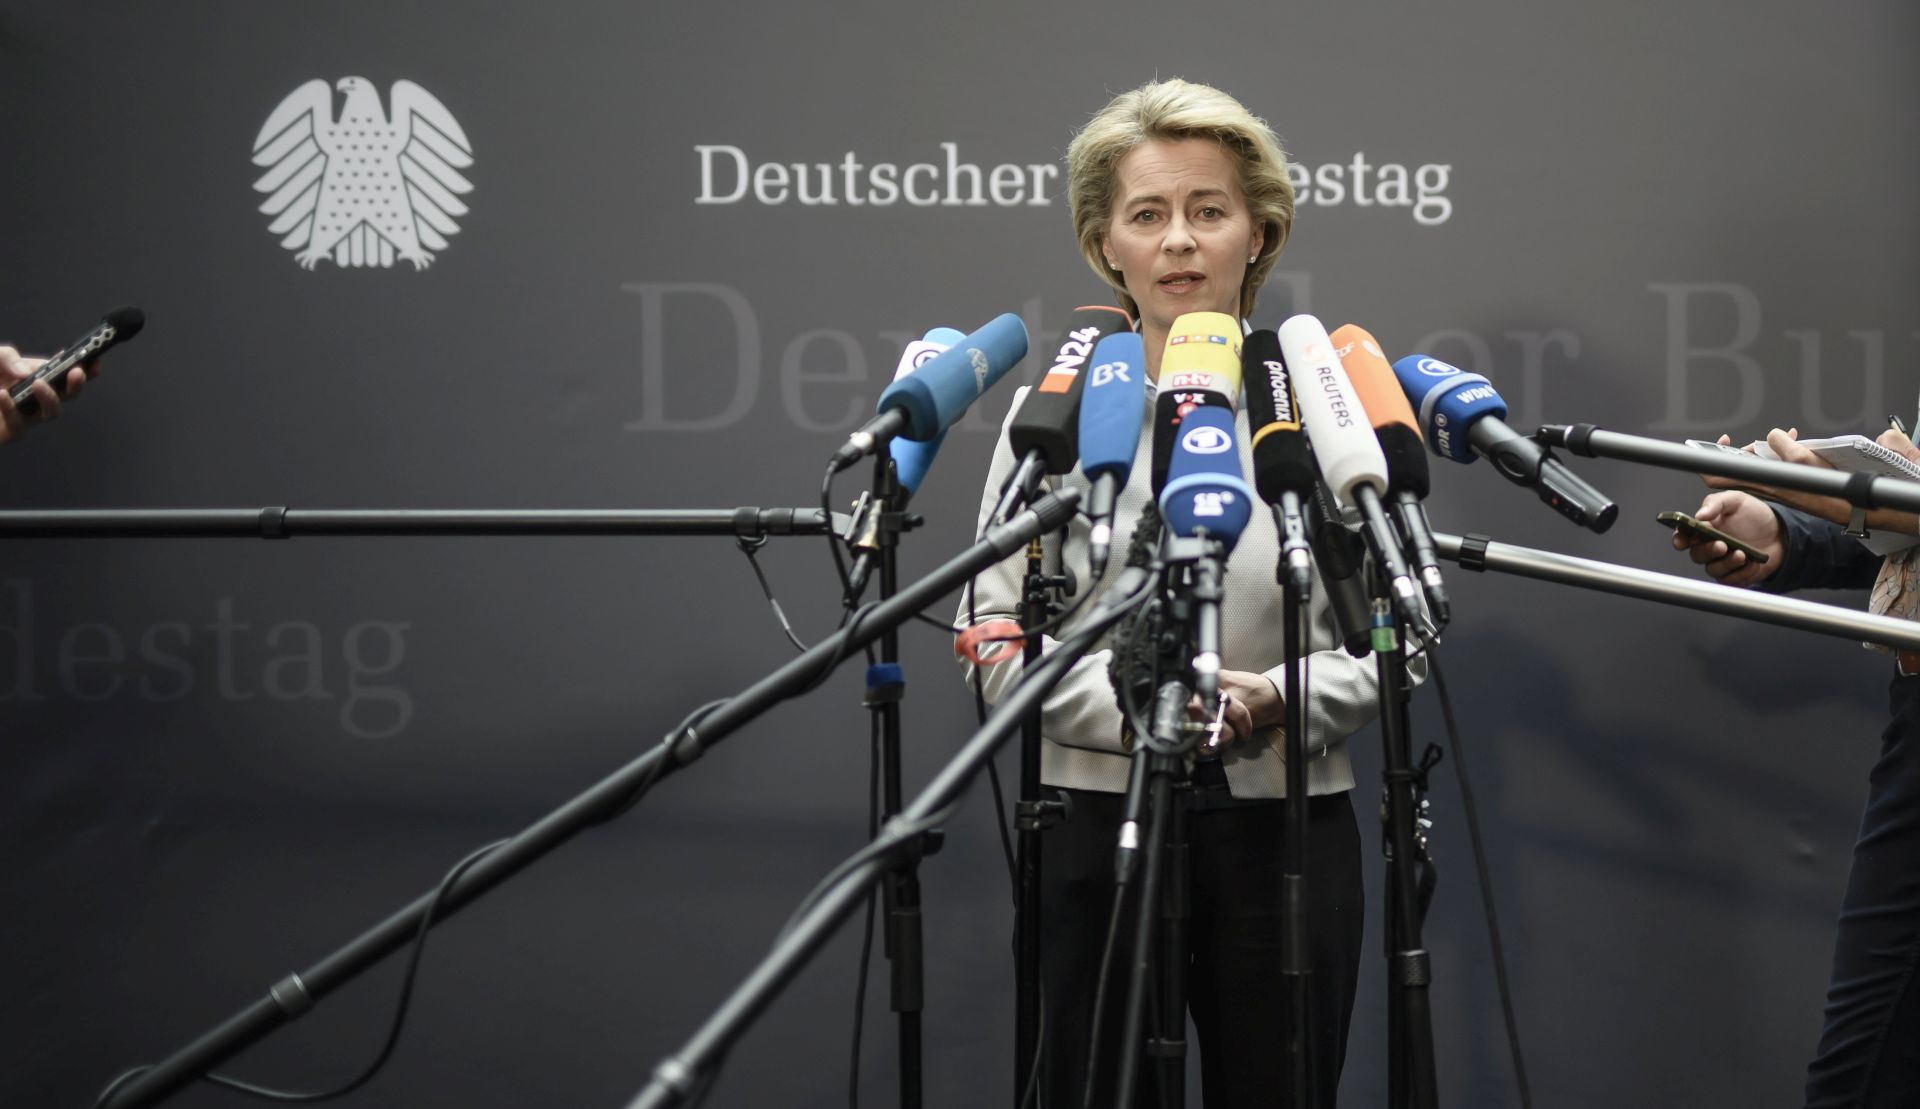 Njemačka ministrica obrane kaže da rat protiv IS-a još nije gotov